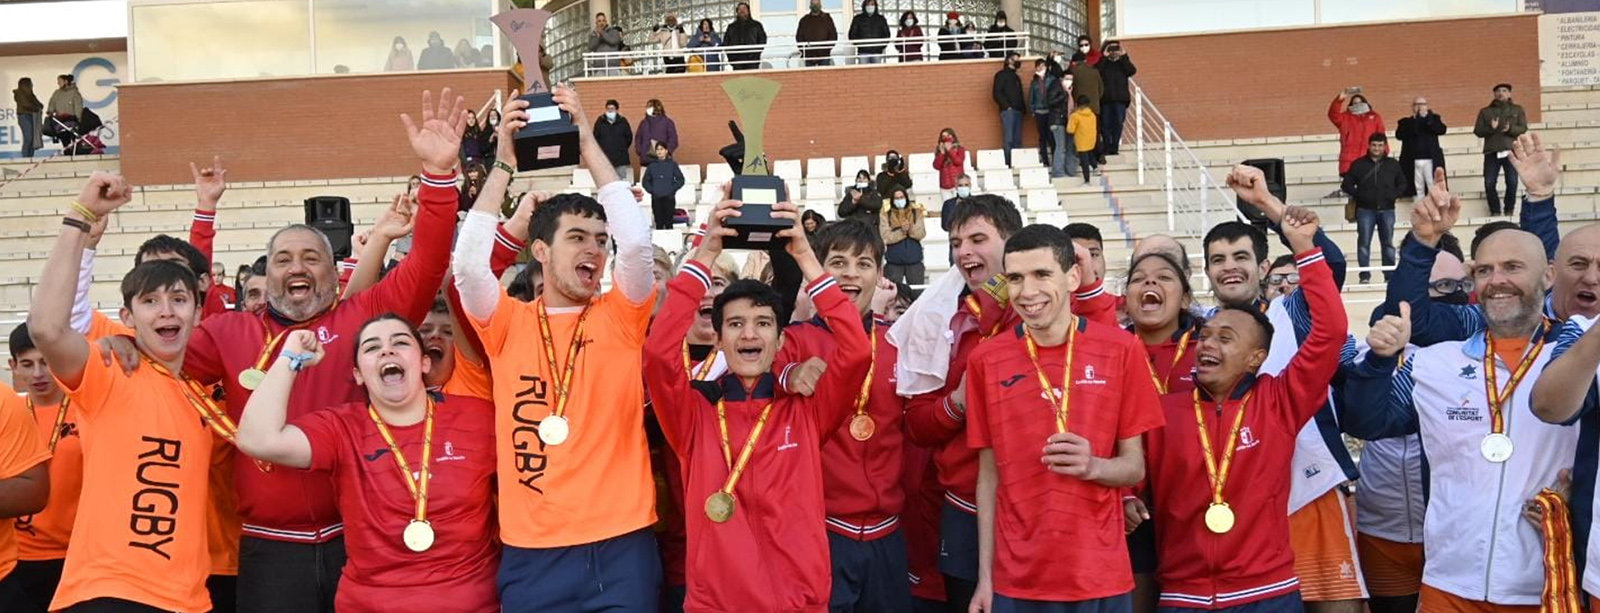 Los Hidalgos del Quijote de enhorabuena: La Selección de Castilla-La Mancha campeona de España